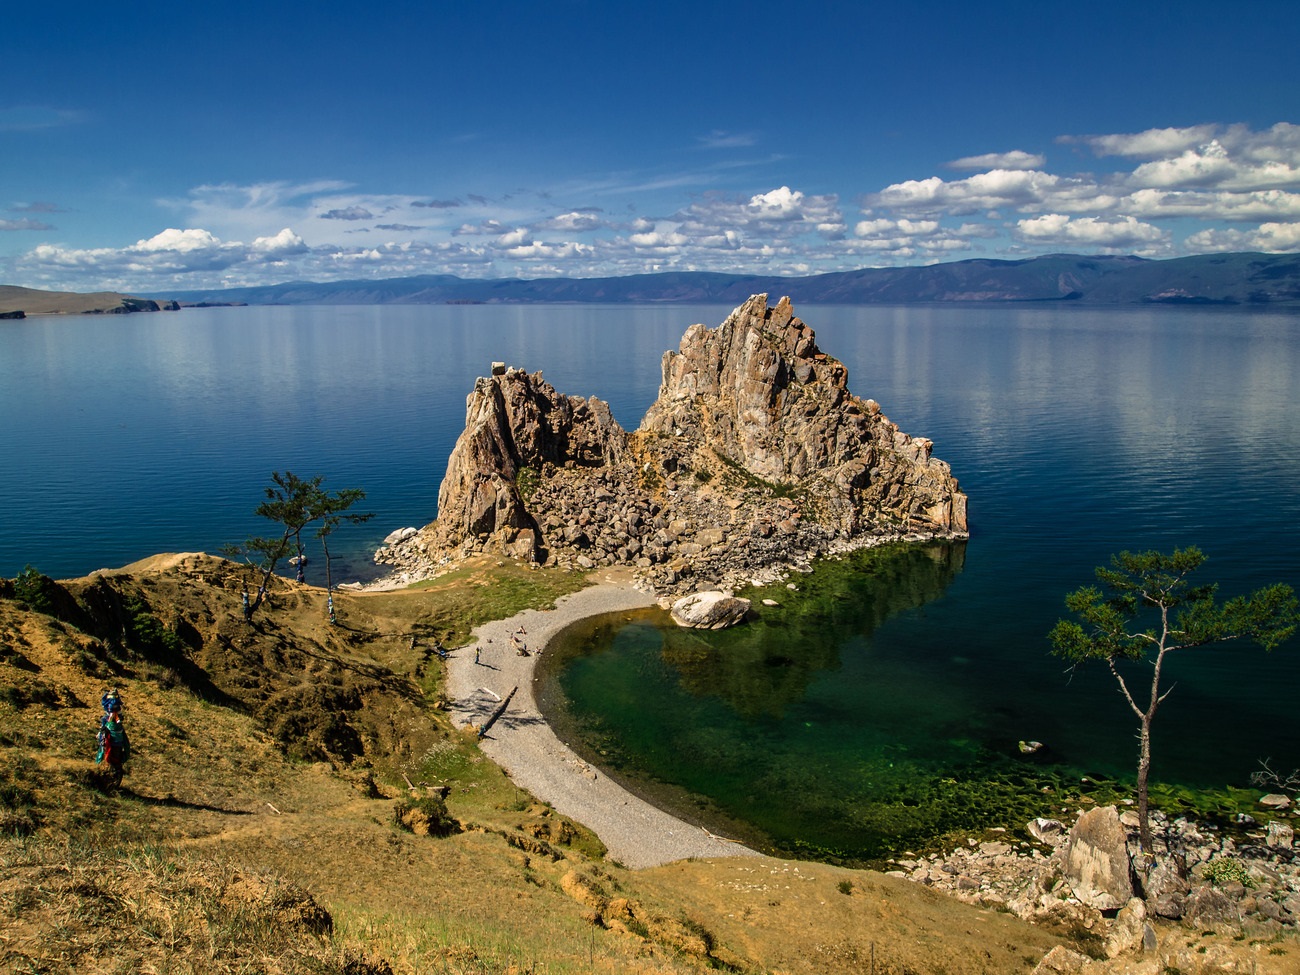 Байкал, Ольхон аралы, Burkhon Cape, Shamanka Rock